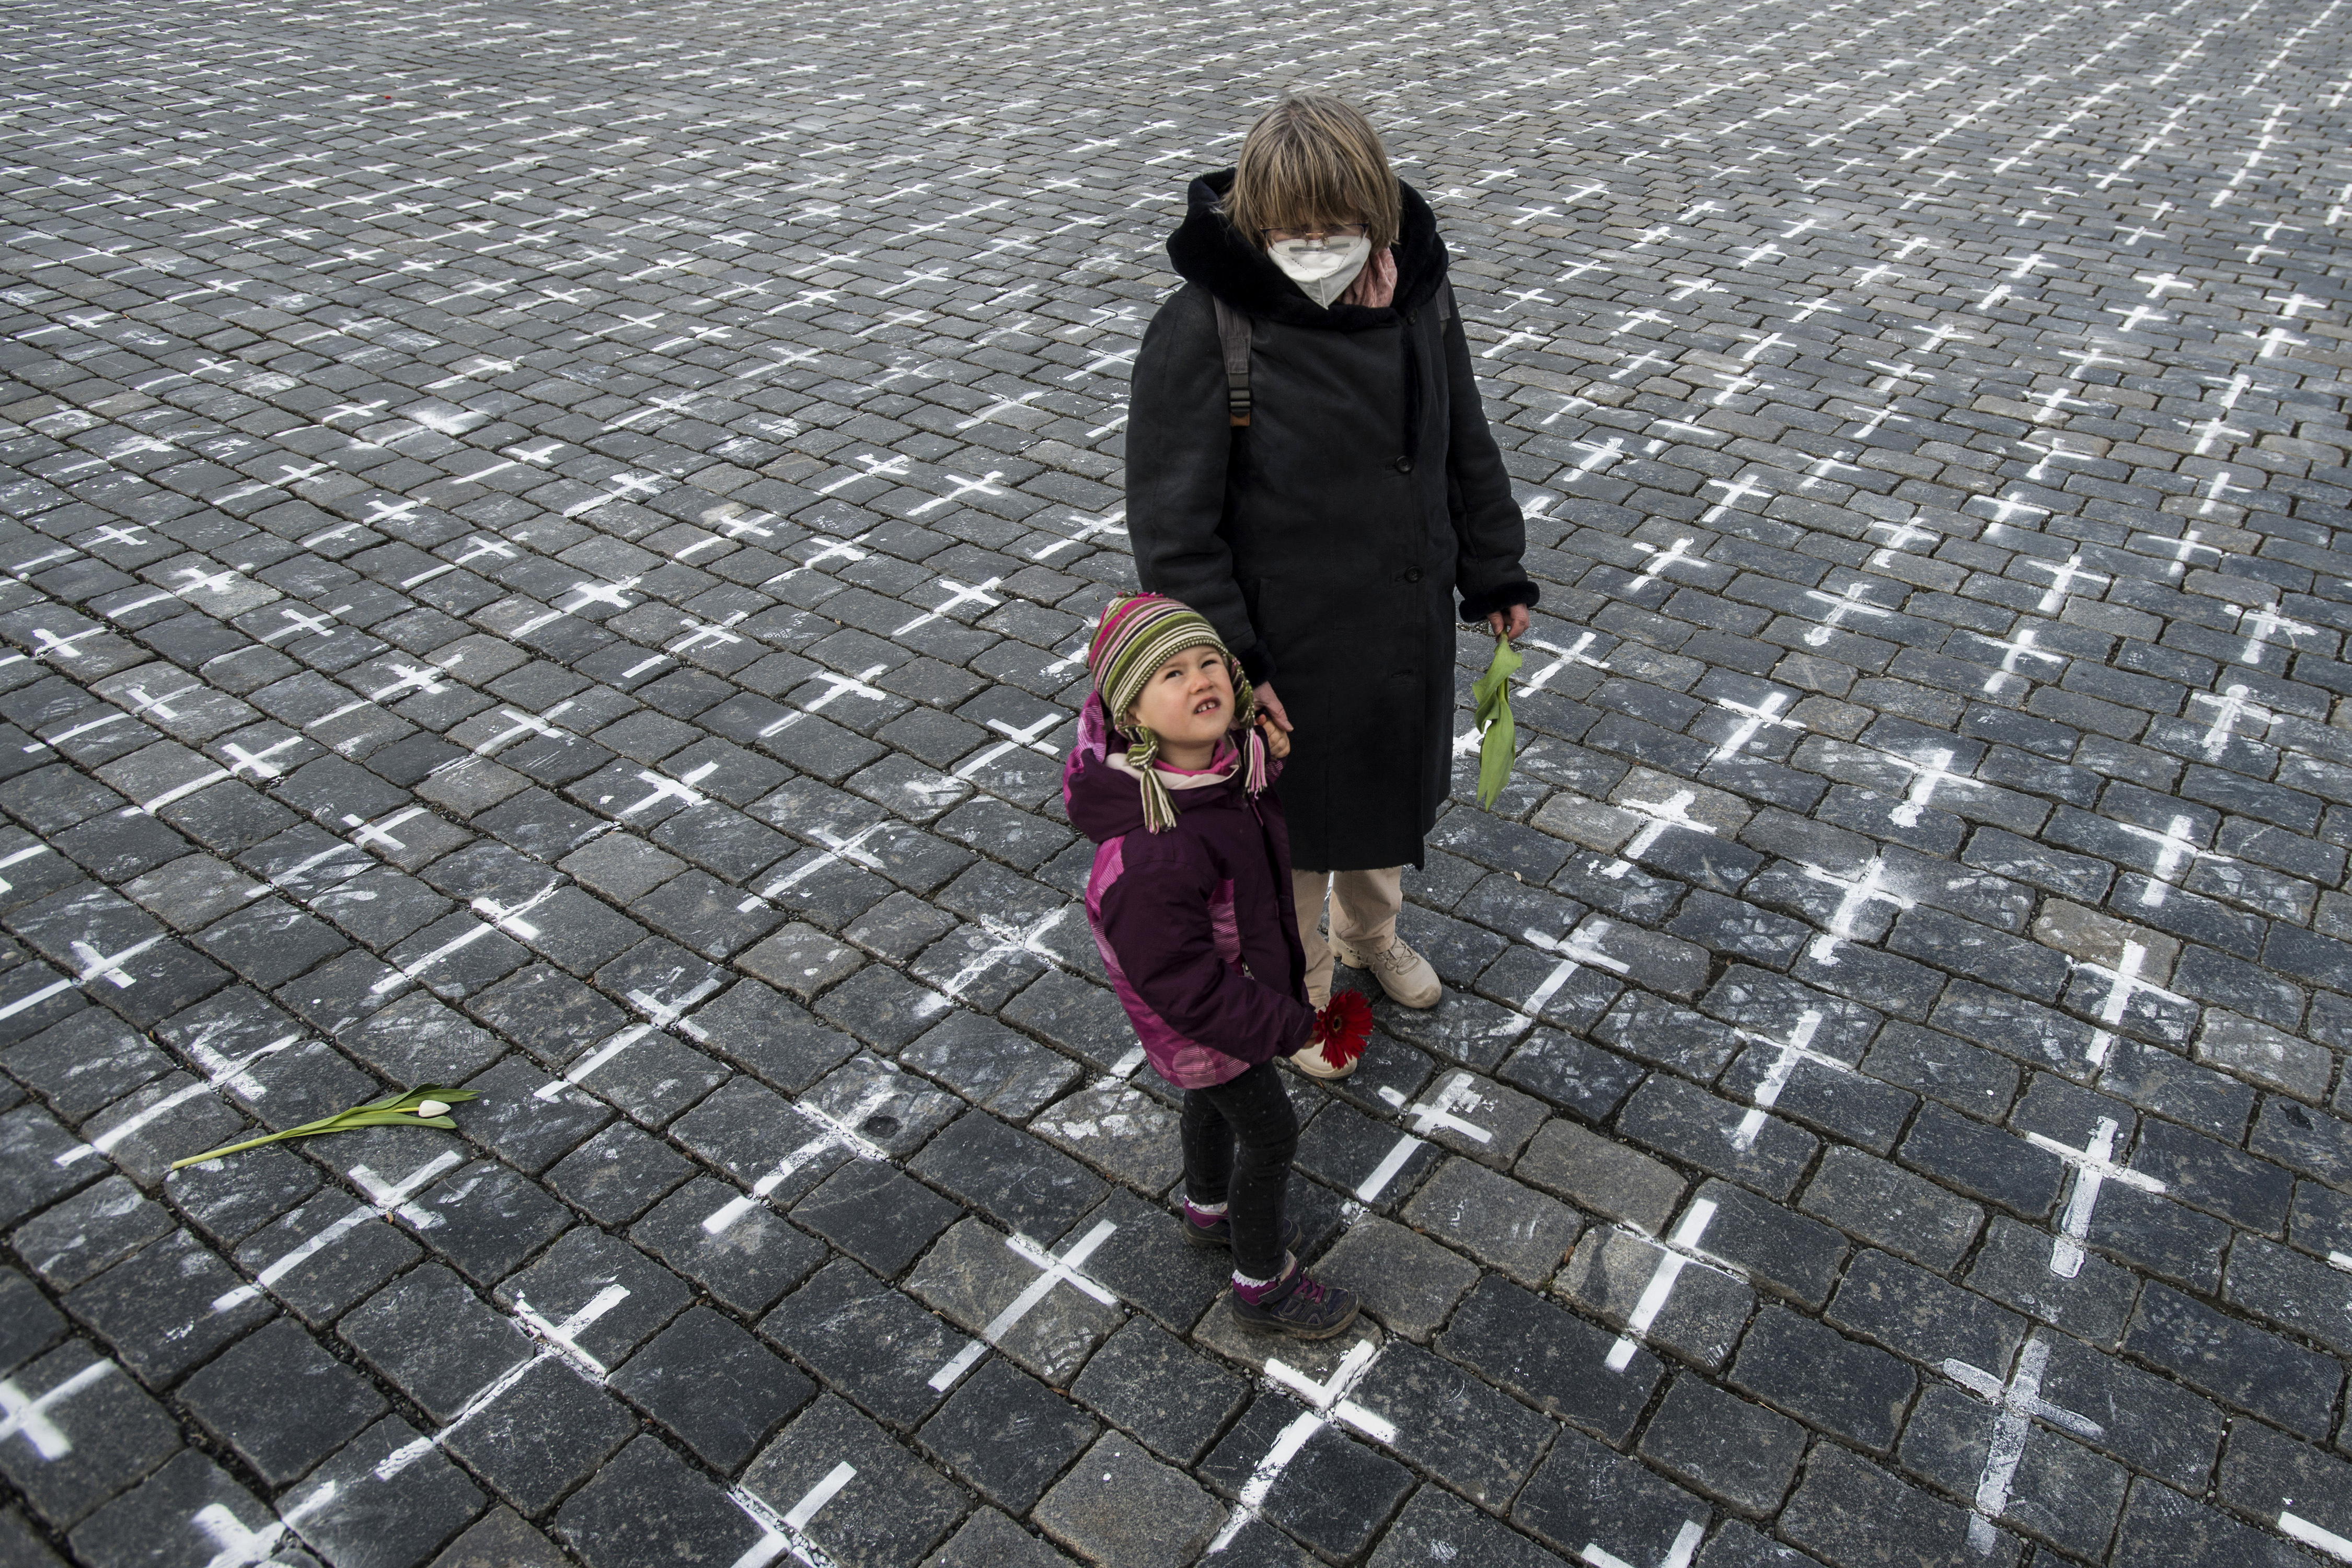 Márciusban ezer kereszttel emlékeztek a prágai Óváros téren a koronavírus cseh áldozataira